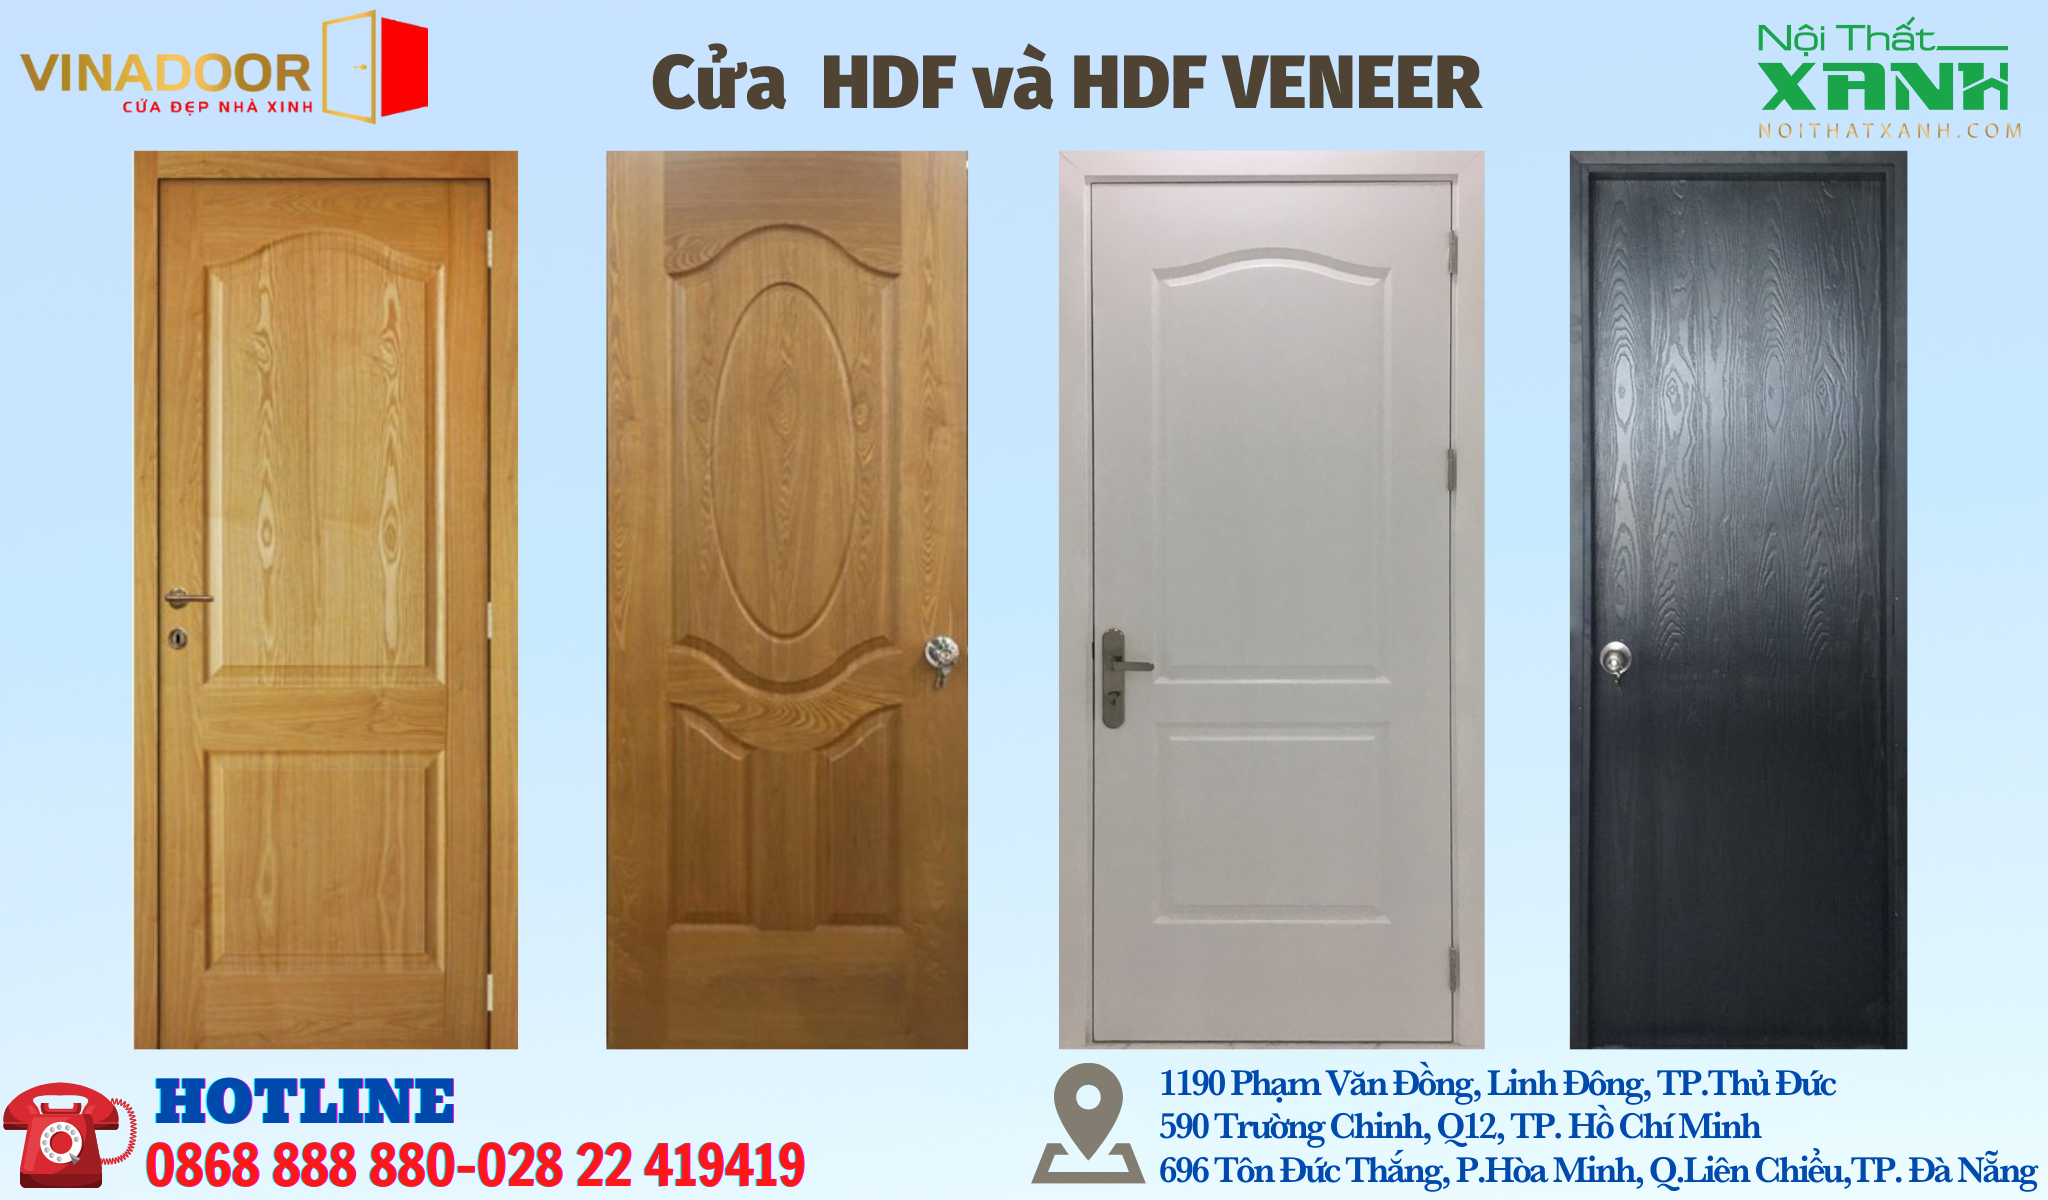 Cửa HDF và HDF VENEER của Nội Thất Xanh